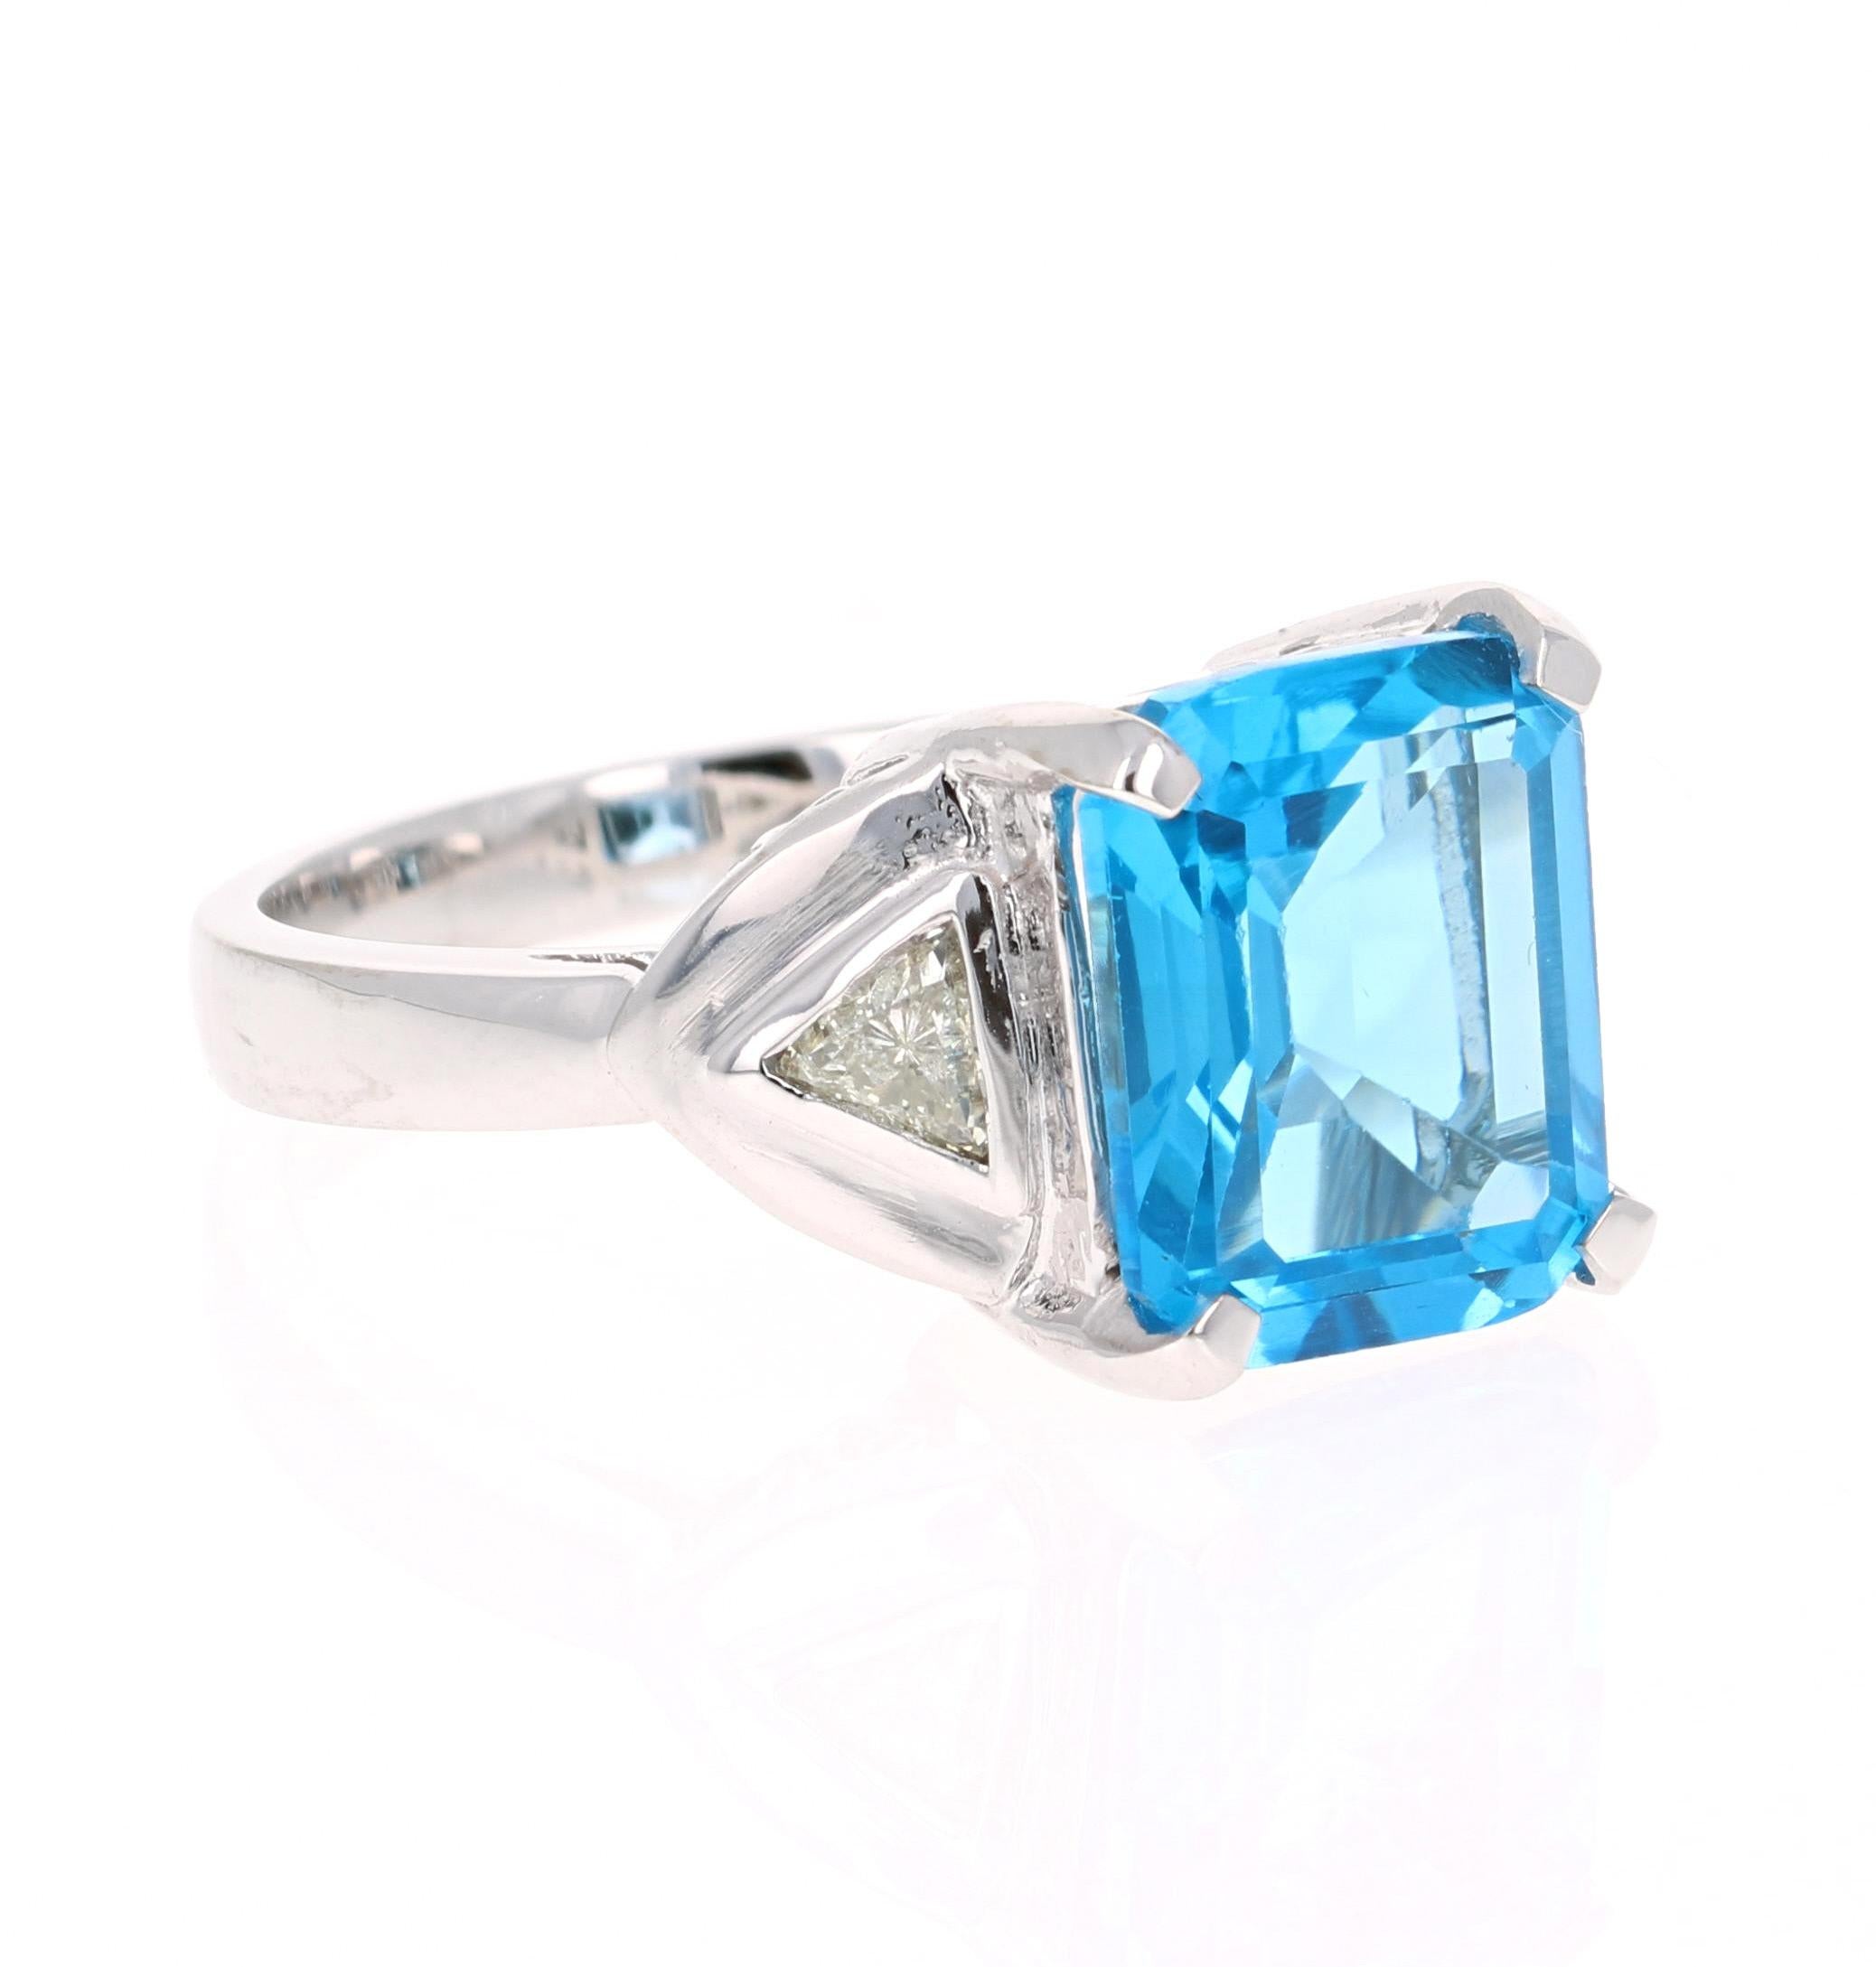 Dieser wunderschöne Ring aus Blautopas und Diamant im Smaragdschliff hat einen atemberaubend großen Blautopas mit einem Gewicht von 6,55 Karat. Er ist umgeben von 2 Diamanten im Billionenschliff mit einem Gewicht von 0,39 Karat. Das